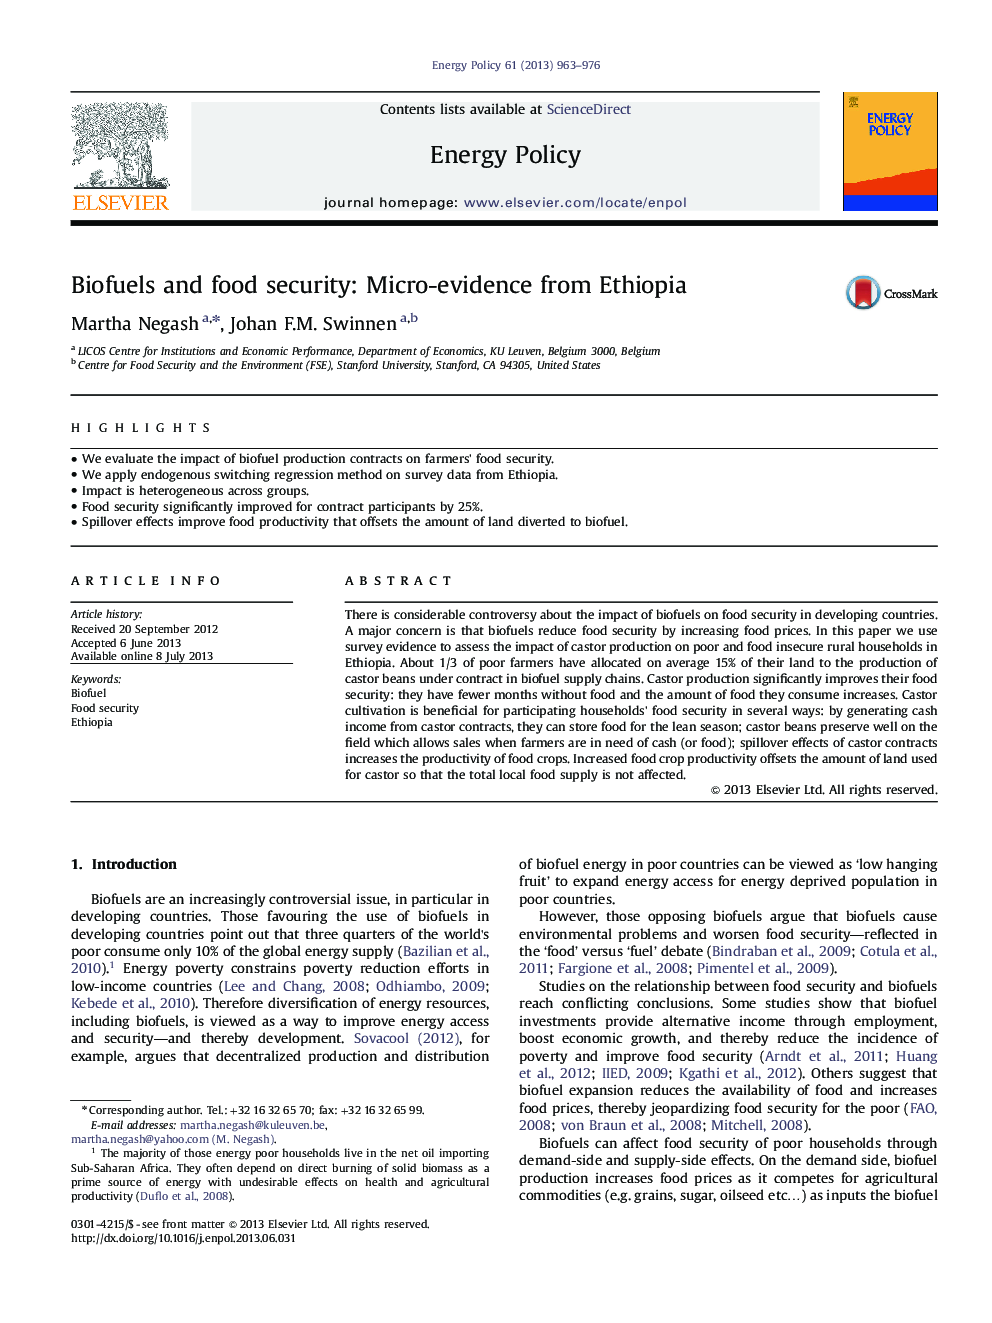 سوخت های زیستی و امنیت غذایی: شواهد اخلاقی از اتیوپی 